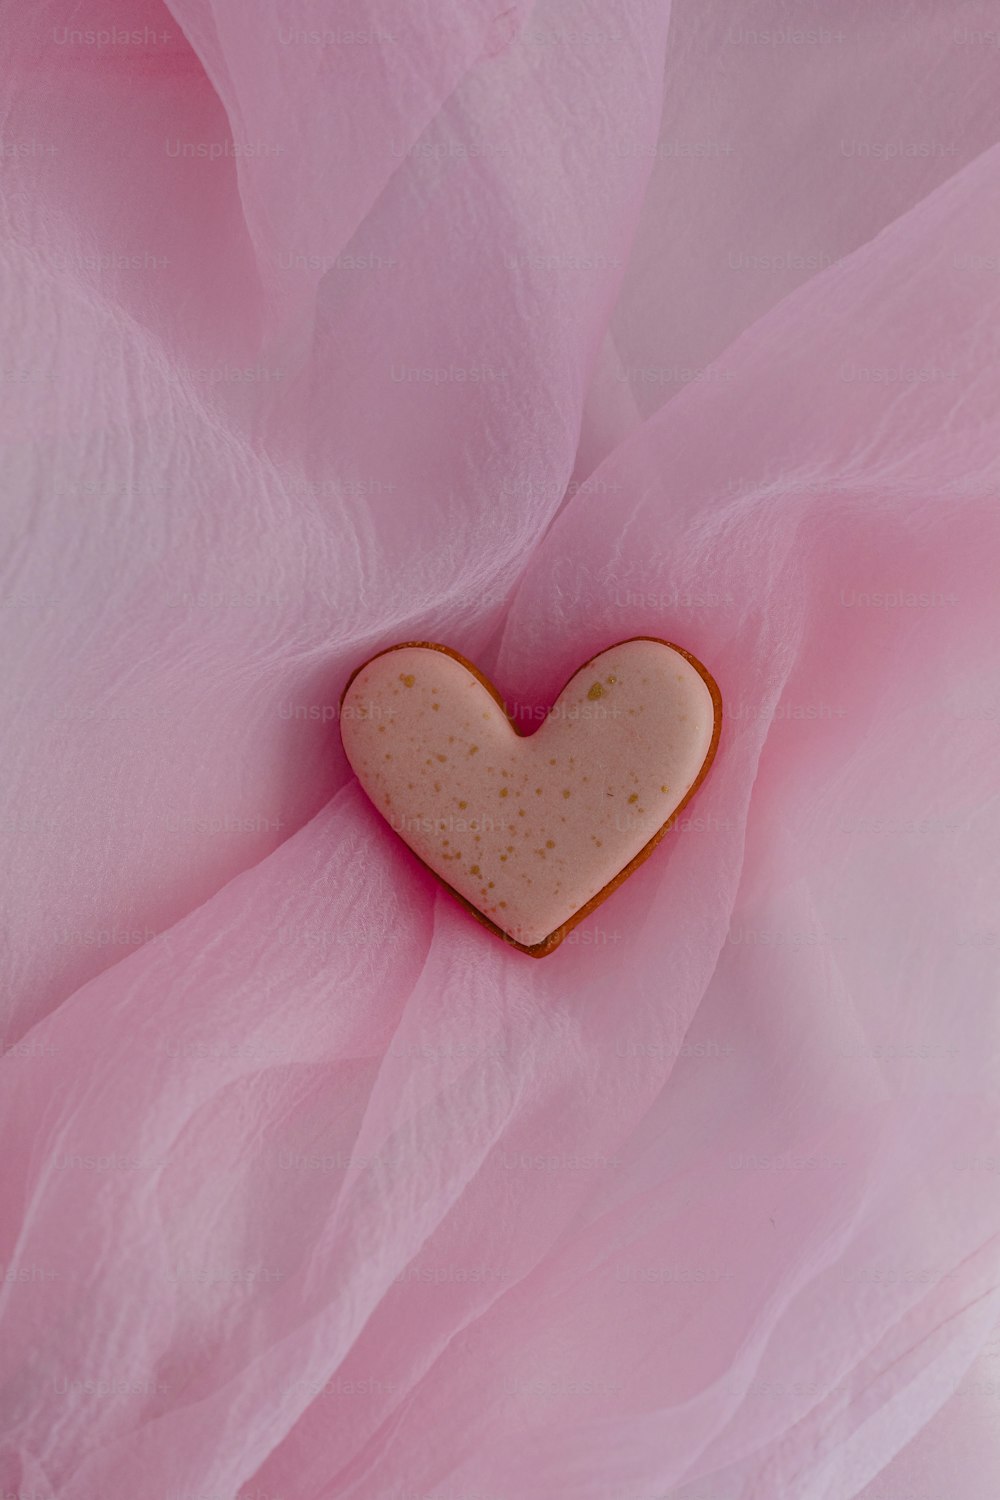 Una galleta en forma de corazón sentada encima de un paño rosa